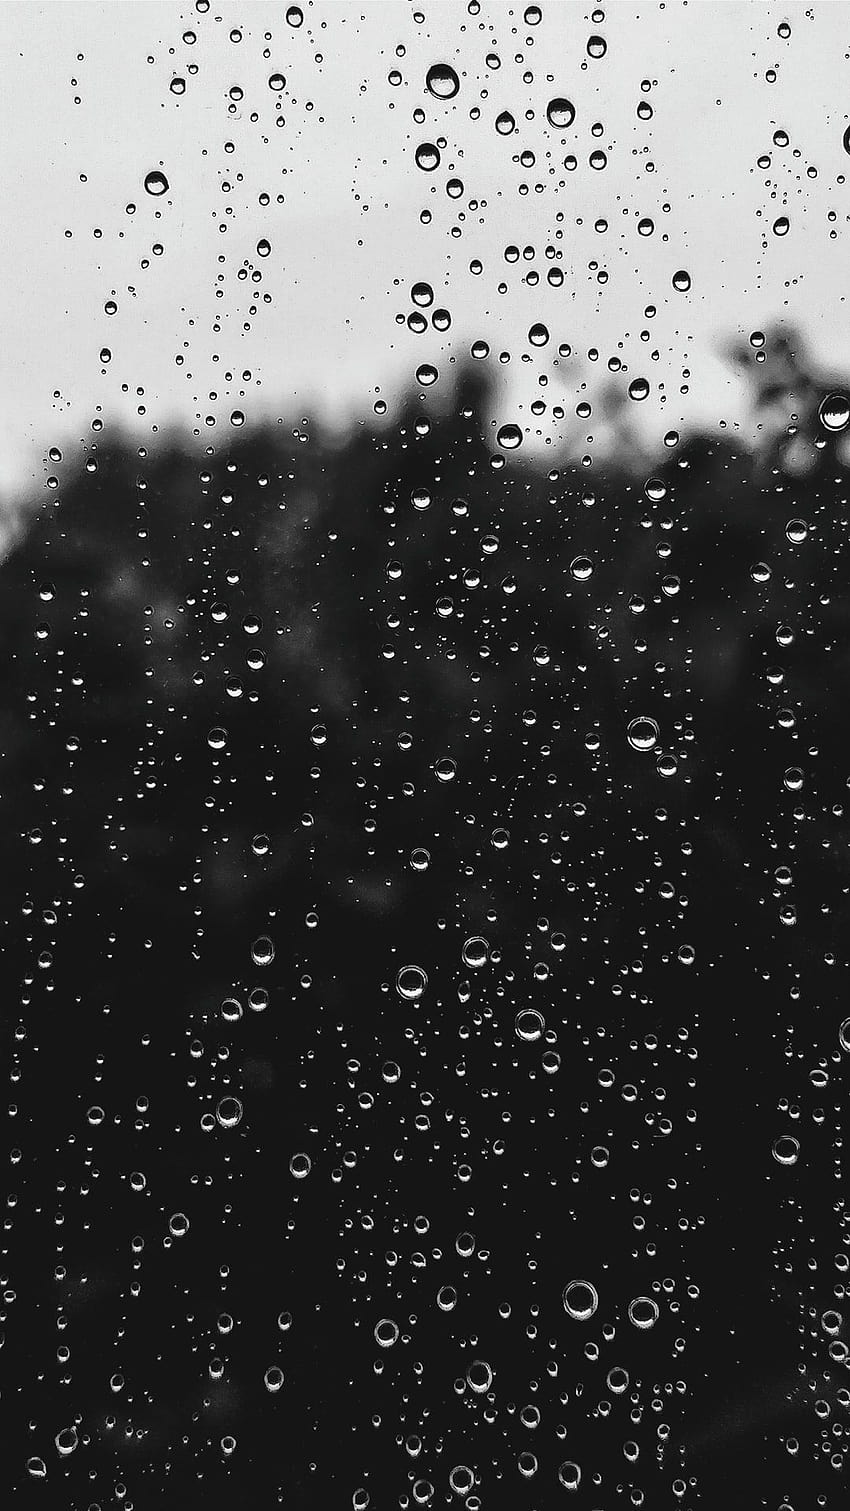 HD rain outside the window wallpapers | Peakpx